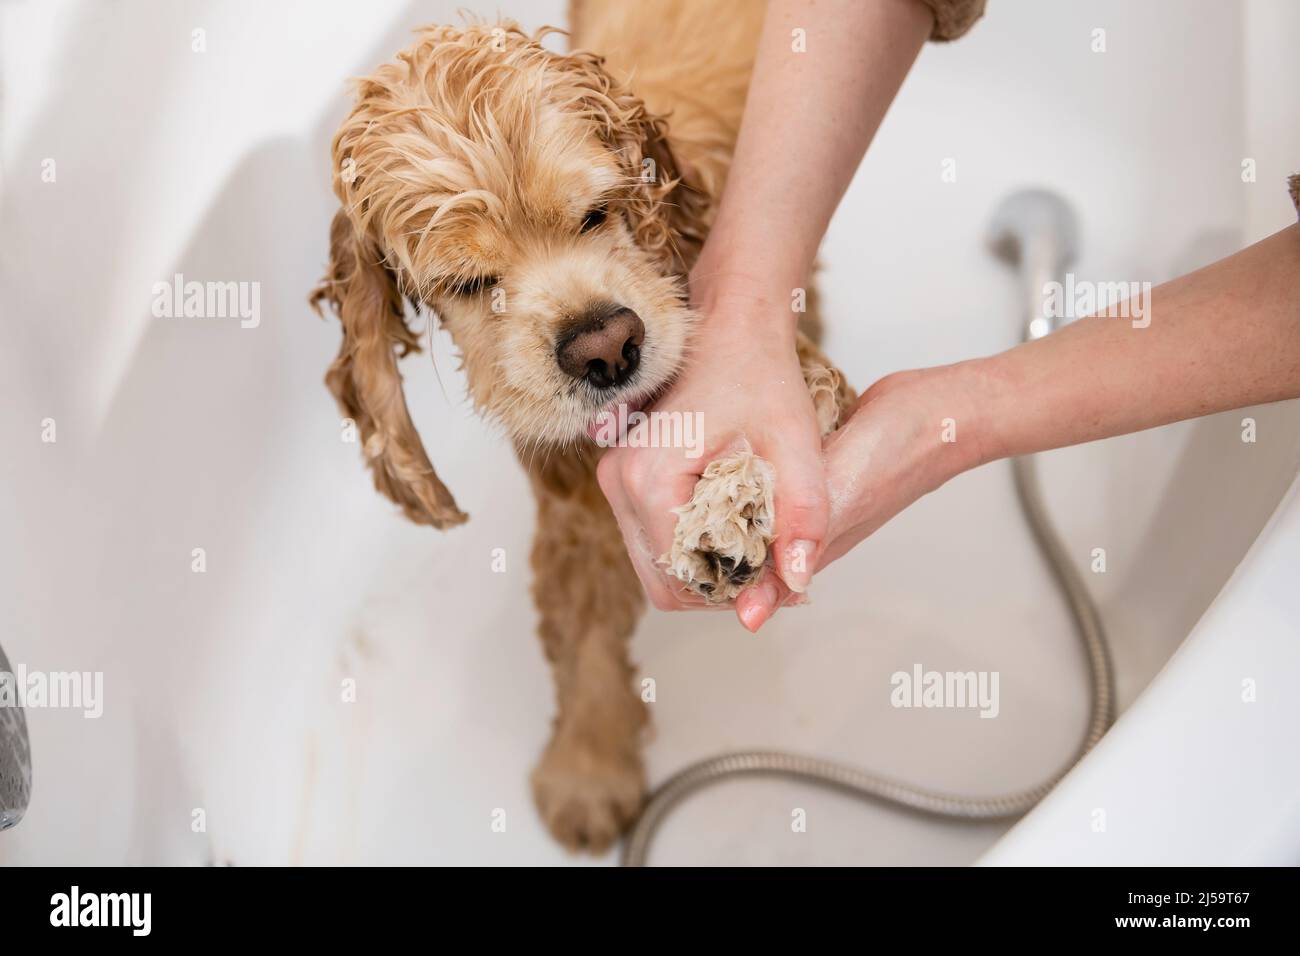 Afeitadora lavando las patas del perro en el baño. Vista en primera persona. Una mano femenina lava la pata de un spaniel con champú. Foto de stock